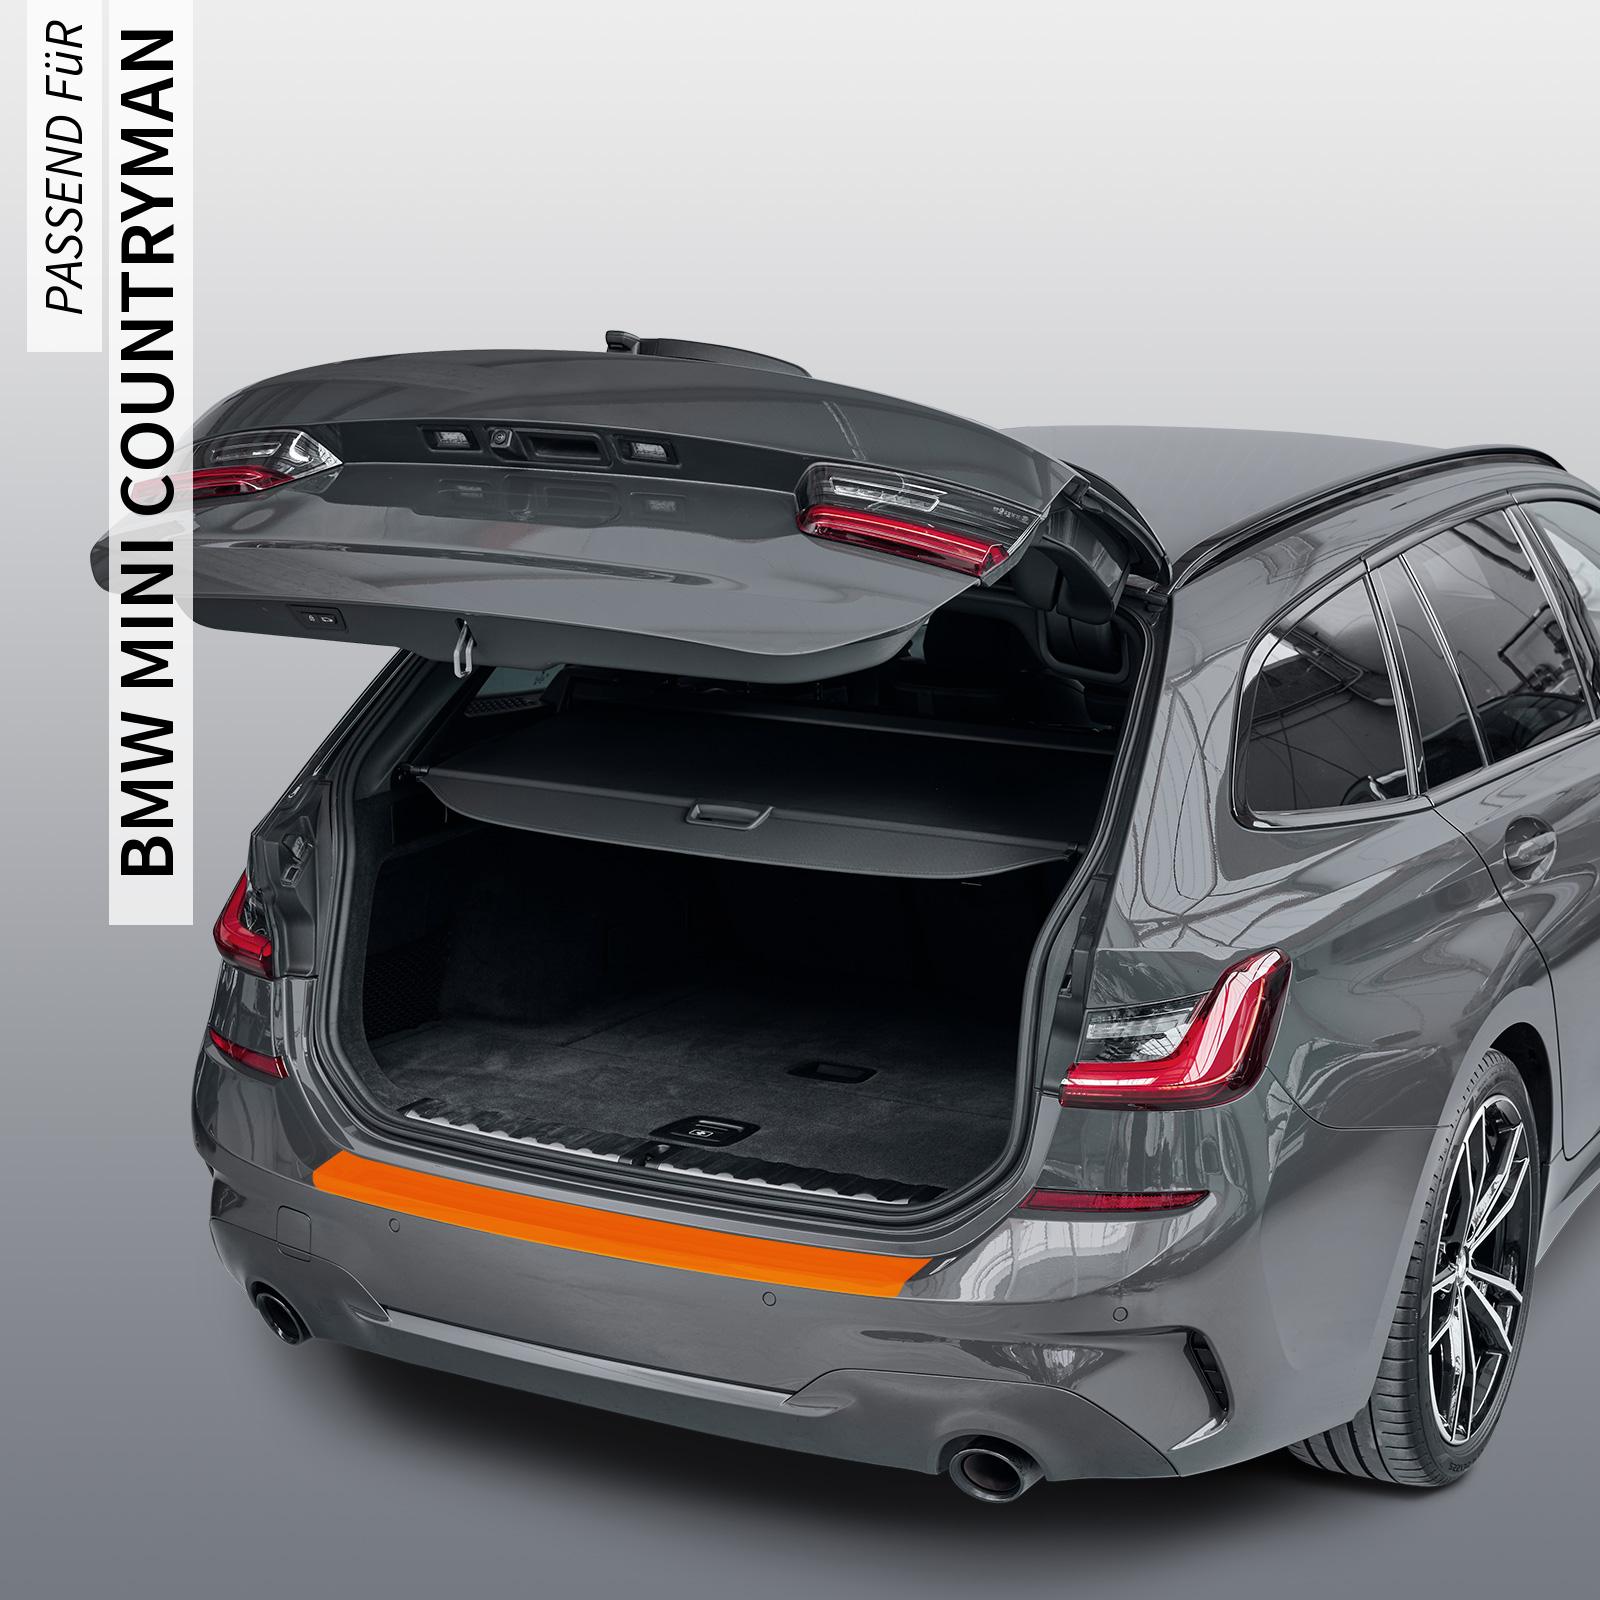 Ladekantenschutzfolie - Transparent Glatt Hochglänzend 150 µm stark für BMW MINI Countryman Typ F60, Facelift, ab BJ 07/2020